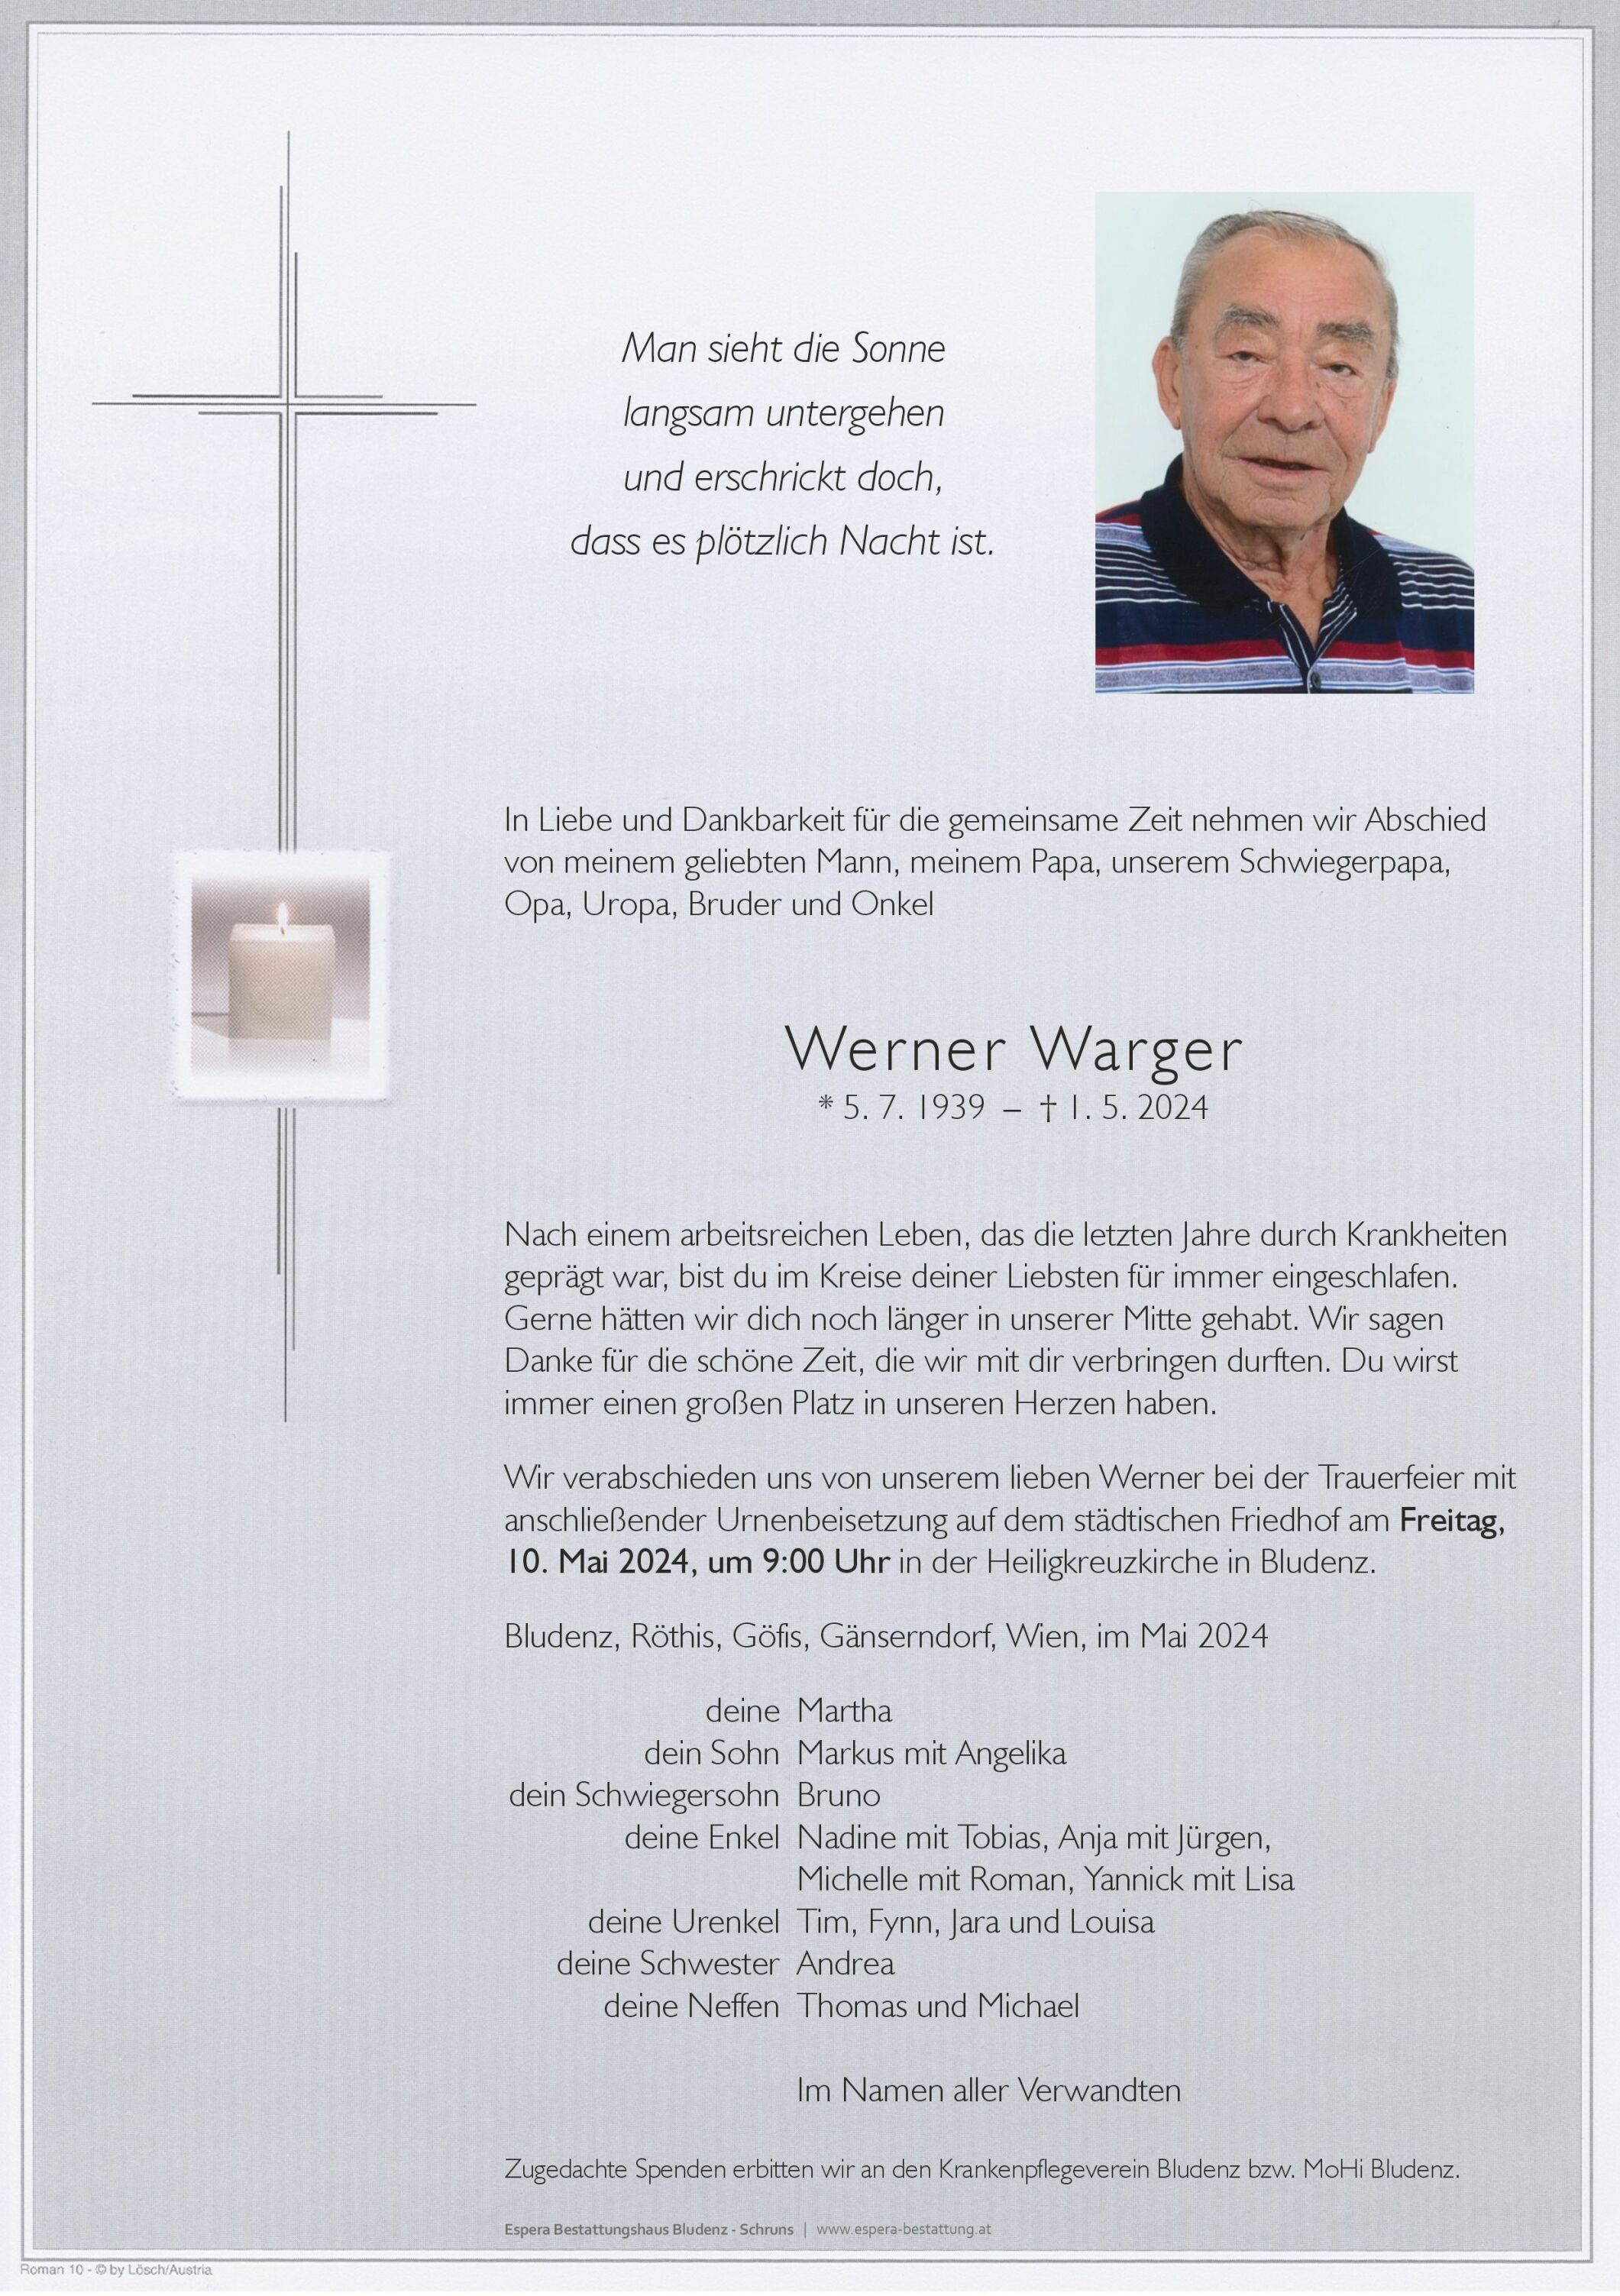 Werner Warger